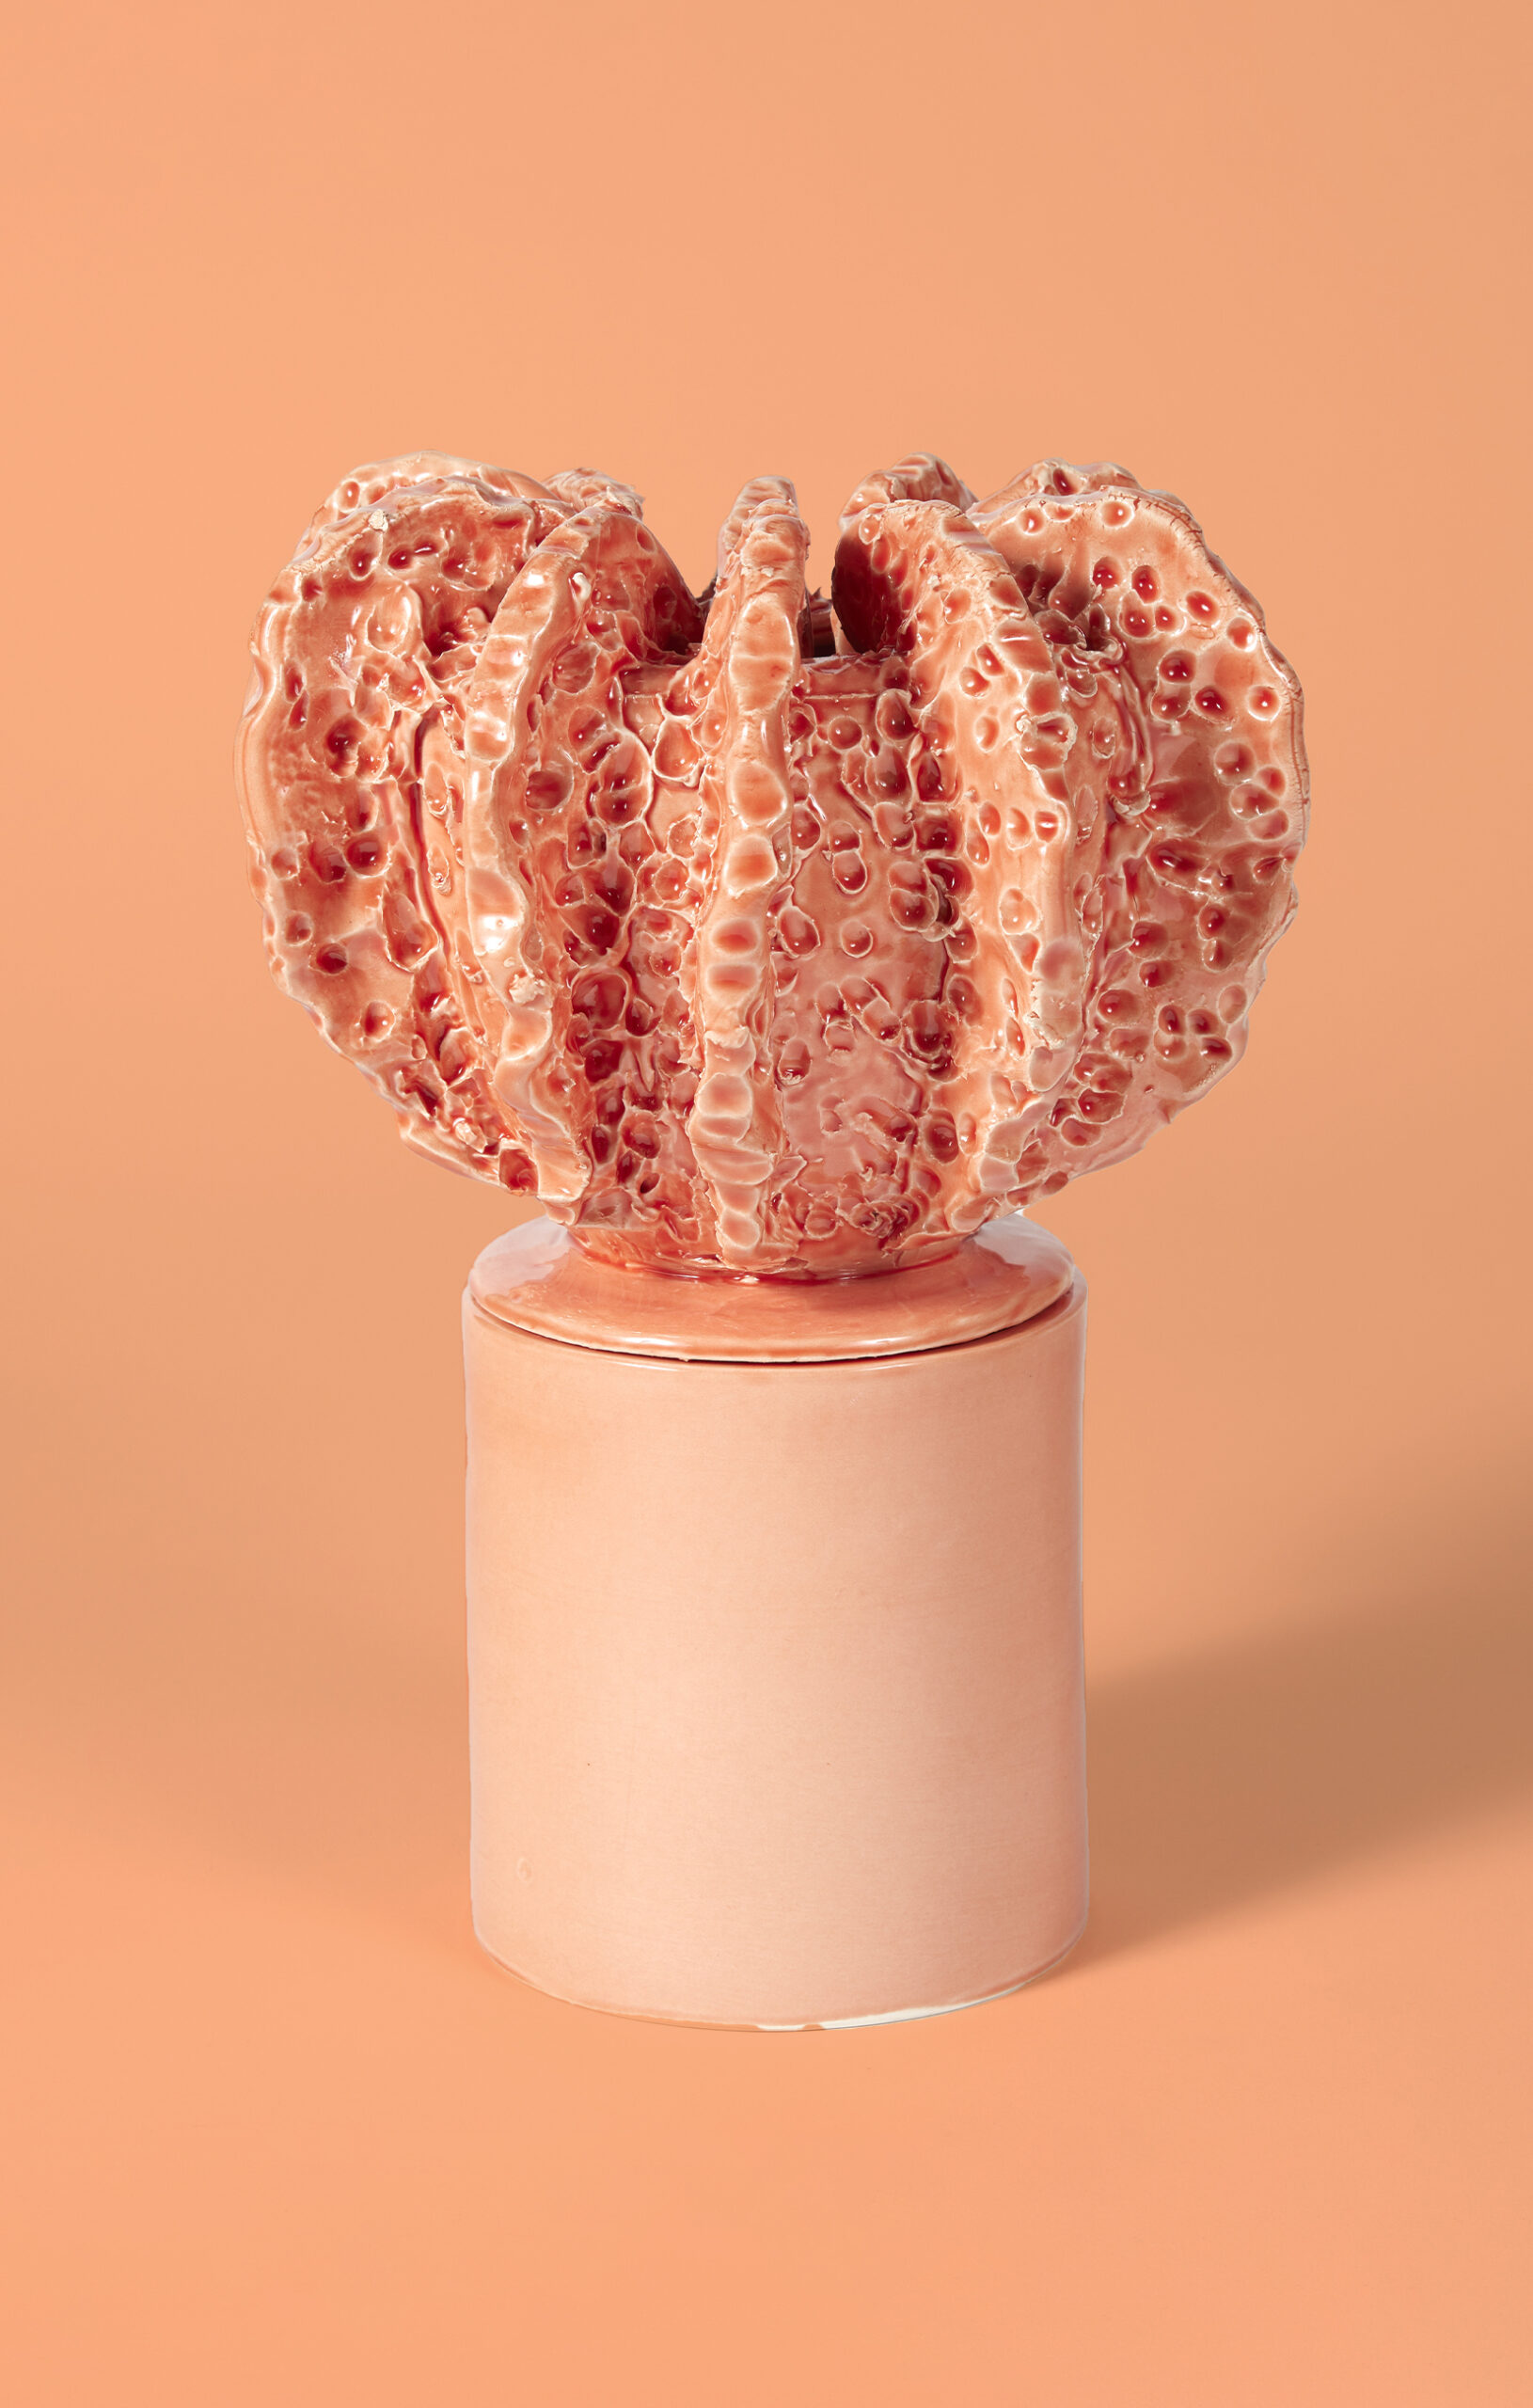 ACROPORA Medium Ceramic Coral